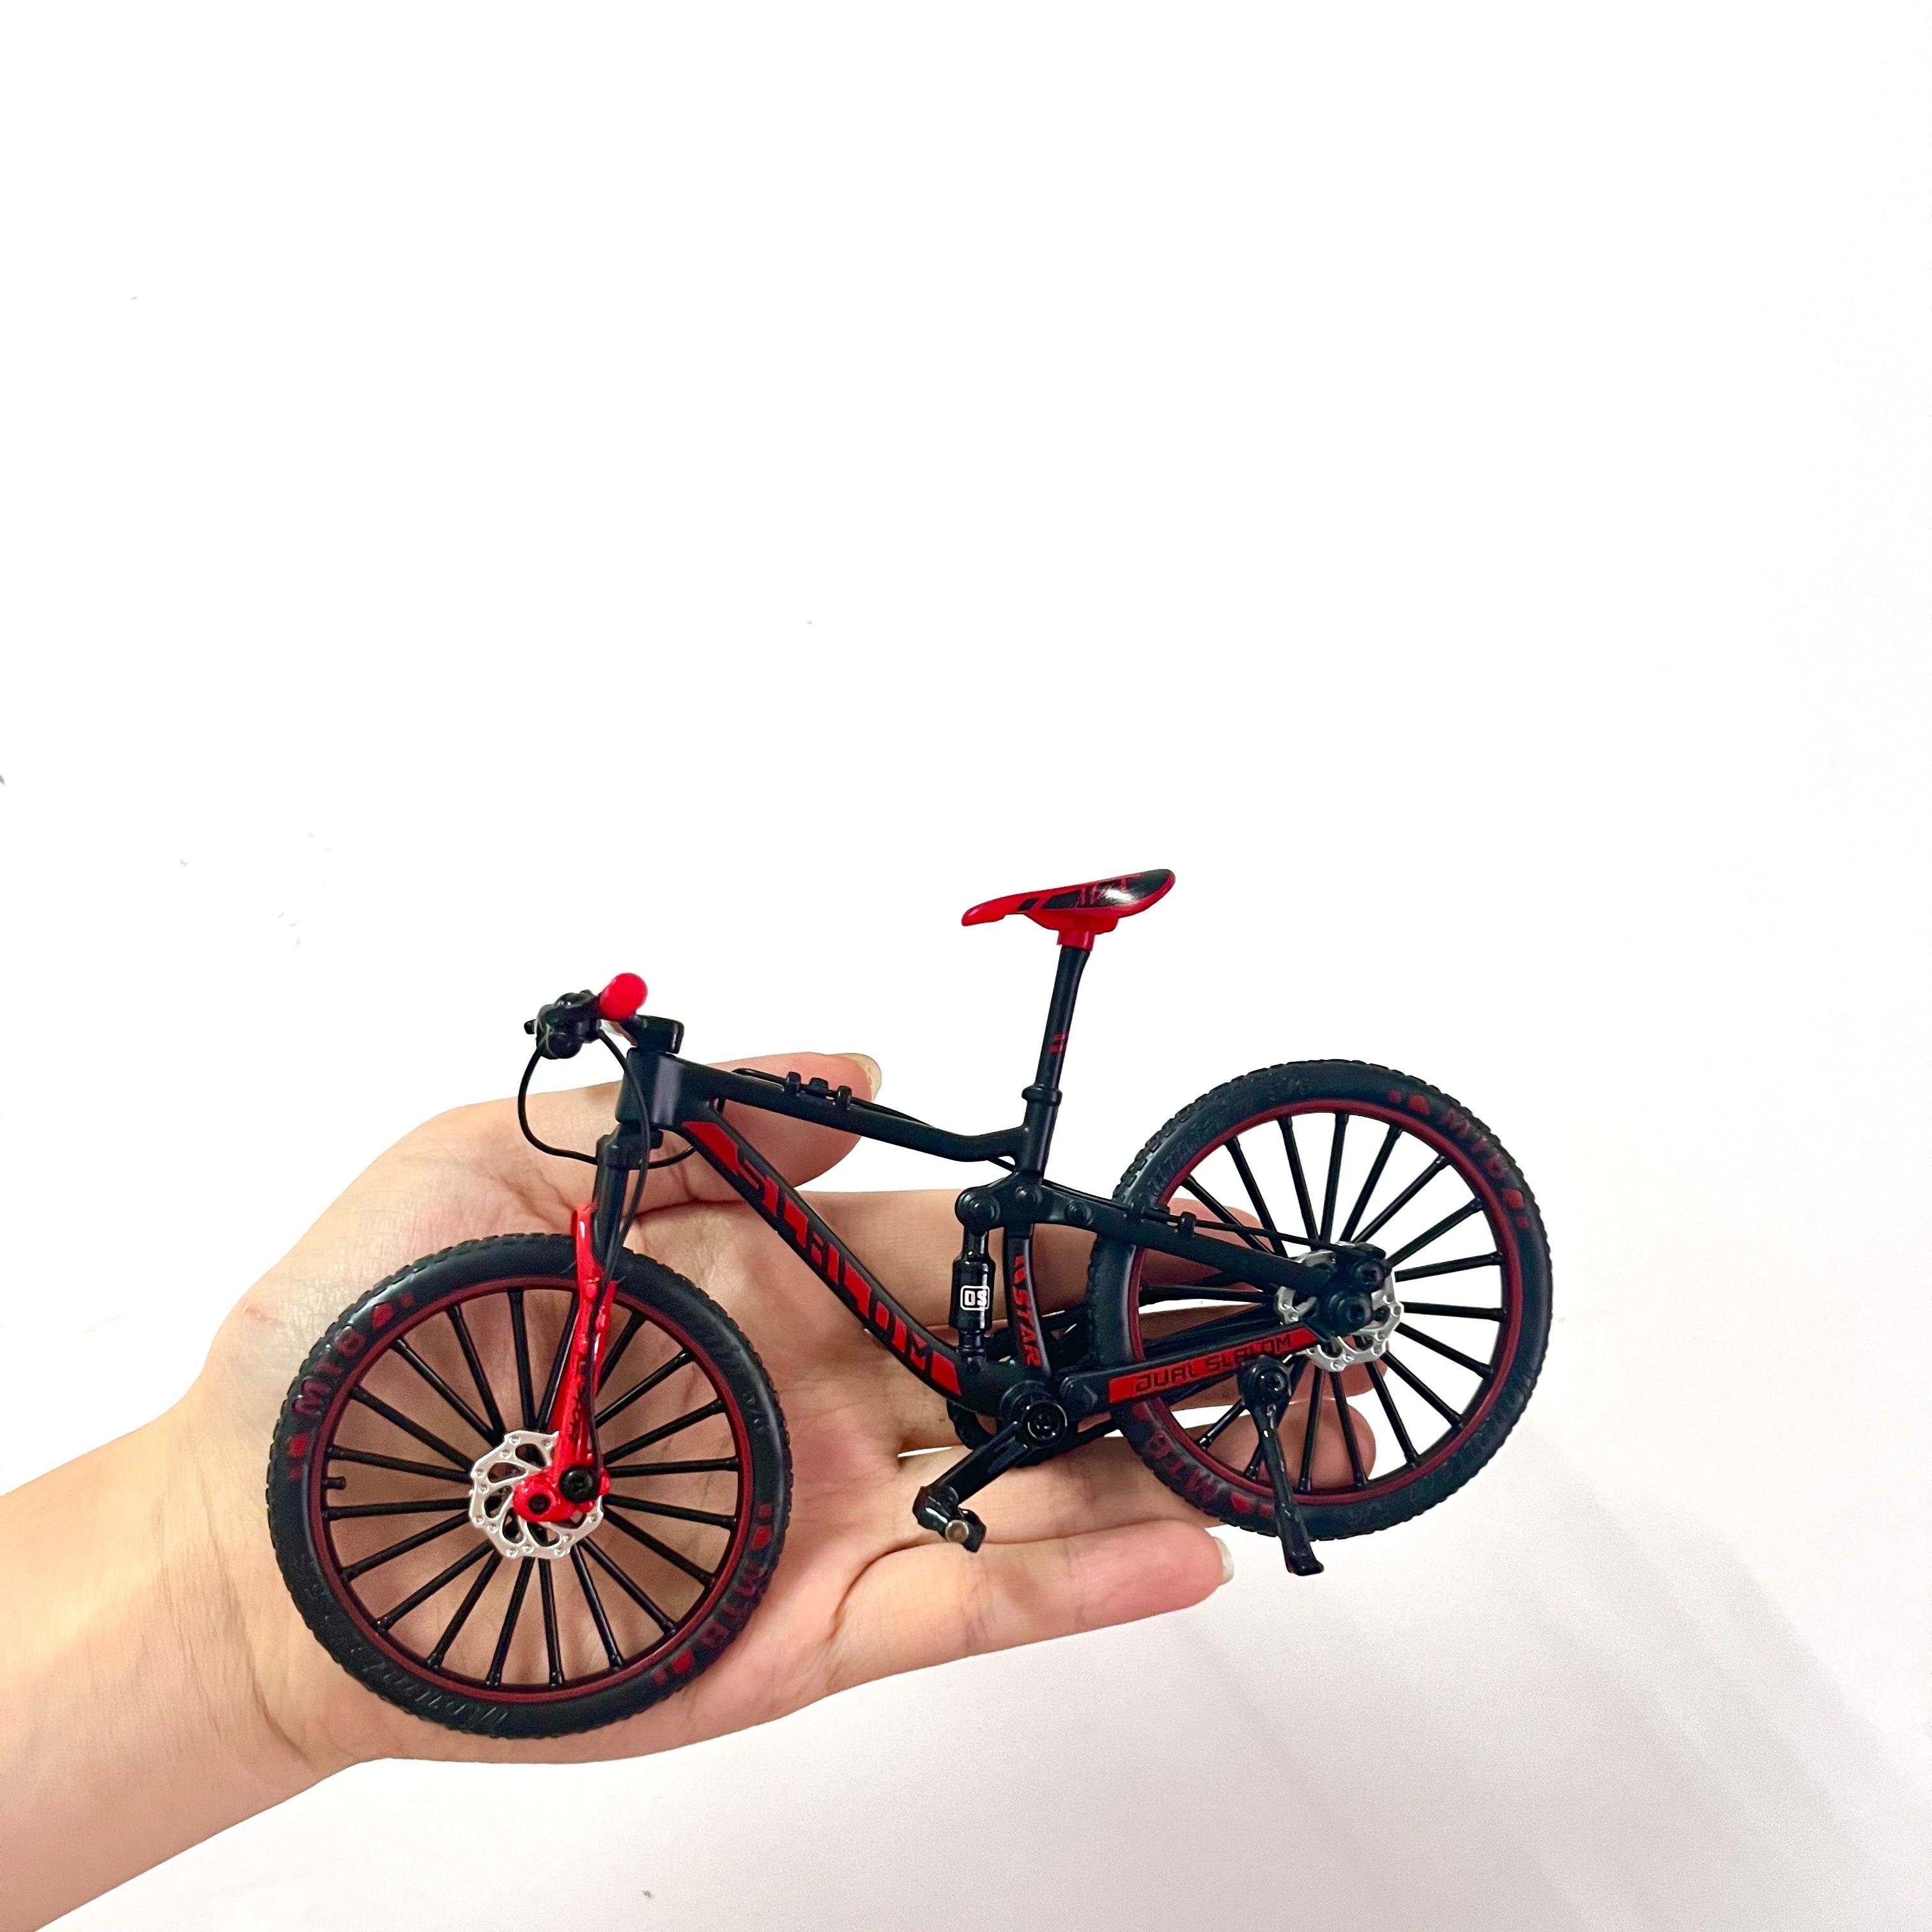 Ornements de vélo 1: 10 Échelle Modèle de vélo Miniature Retro